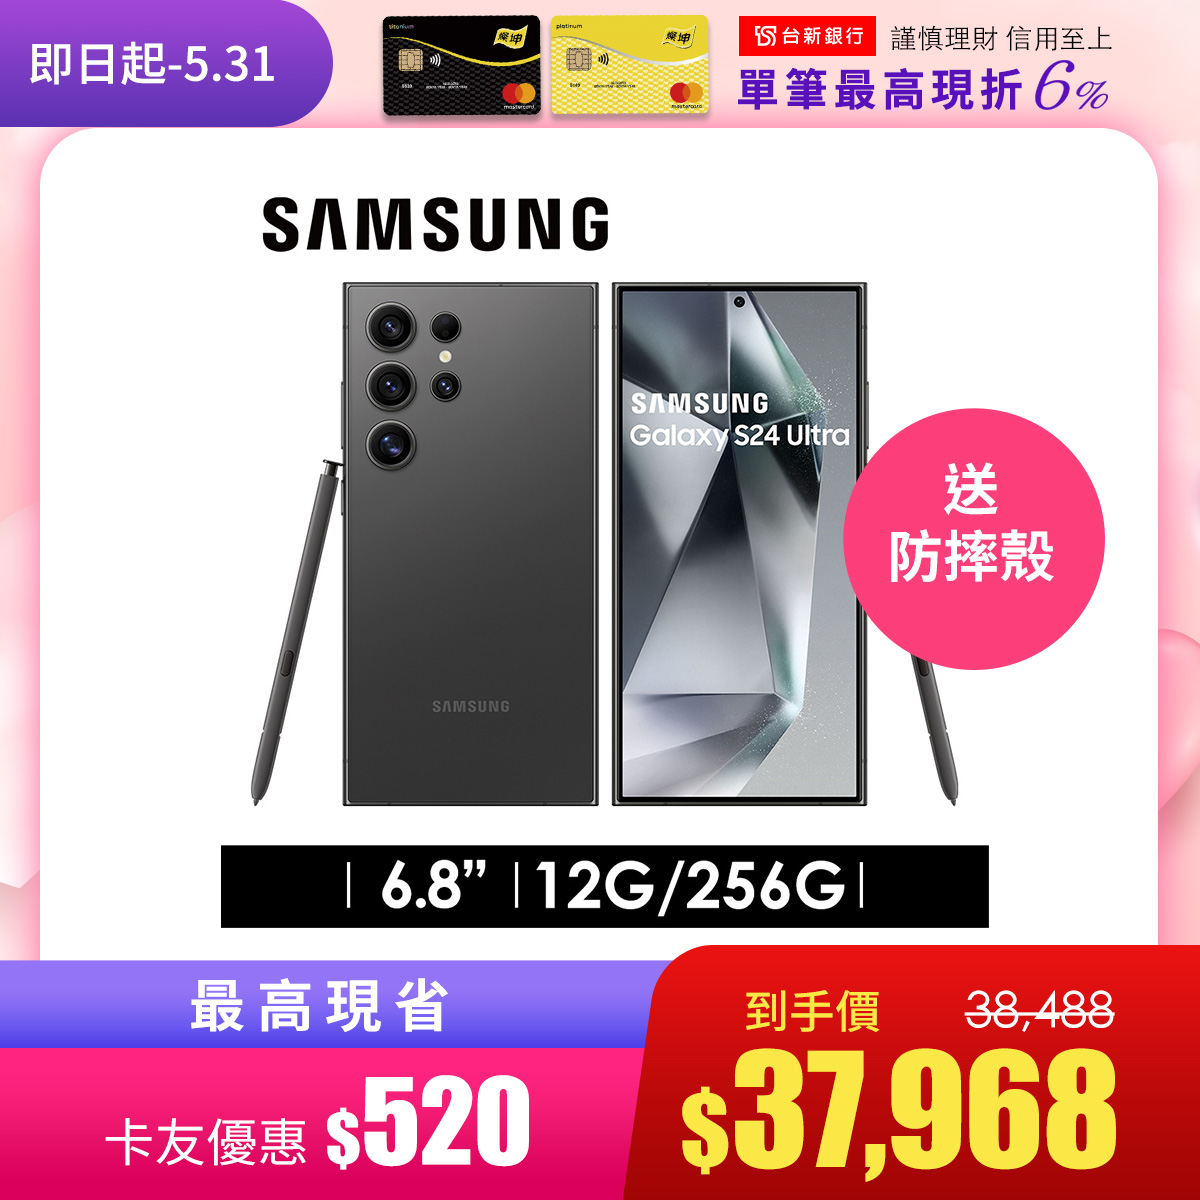 2年保固組 | SAMSUNG Galaxy S24 Ultra 12G/256G 鈦黑